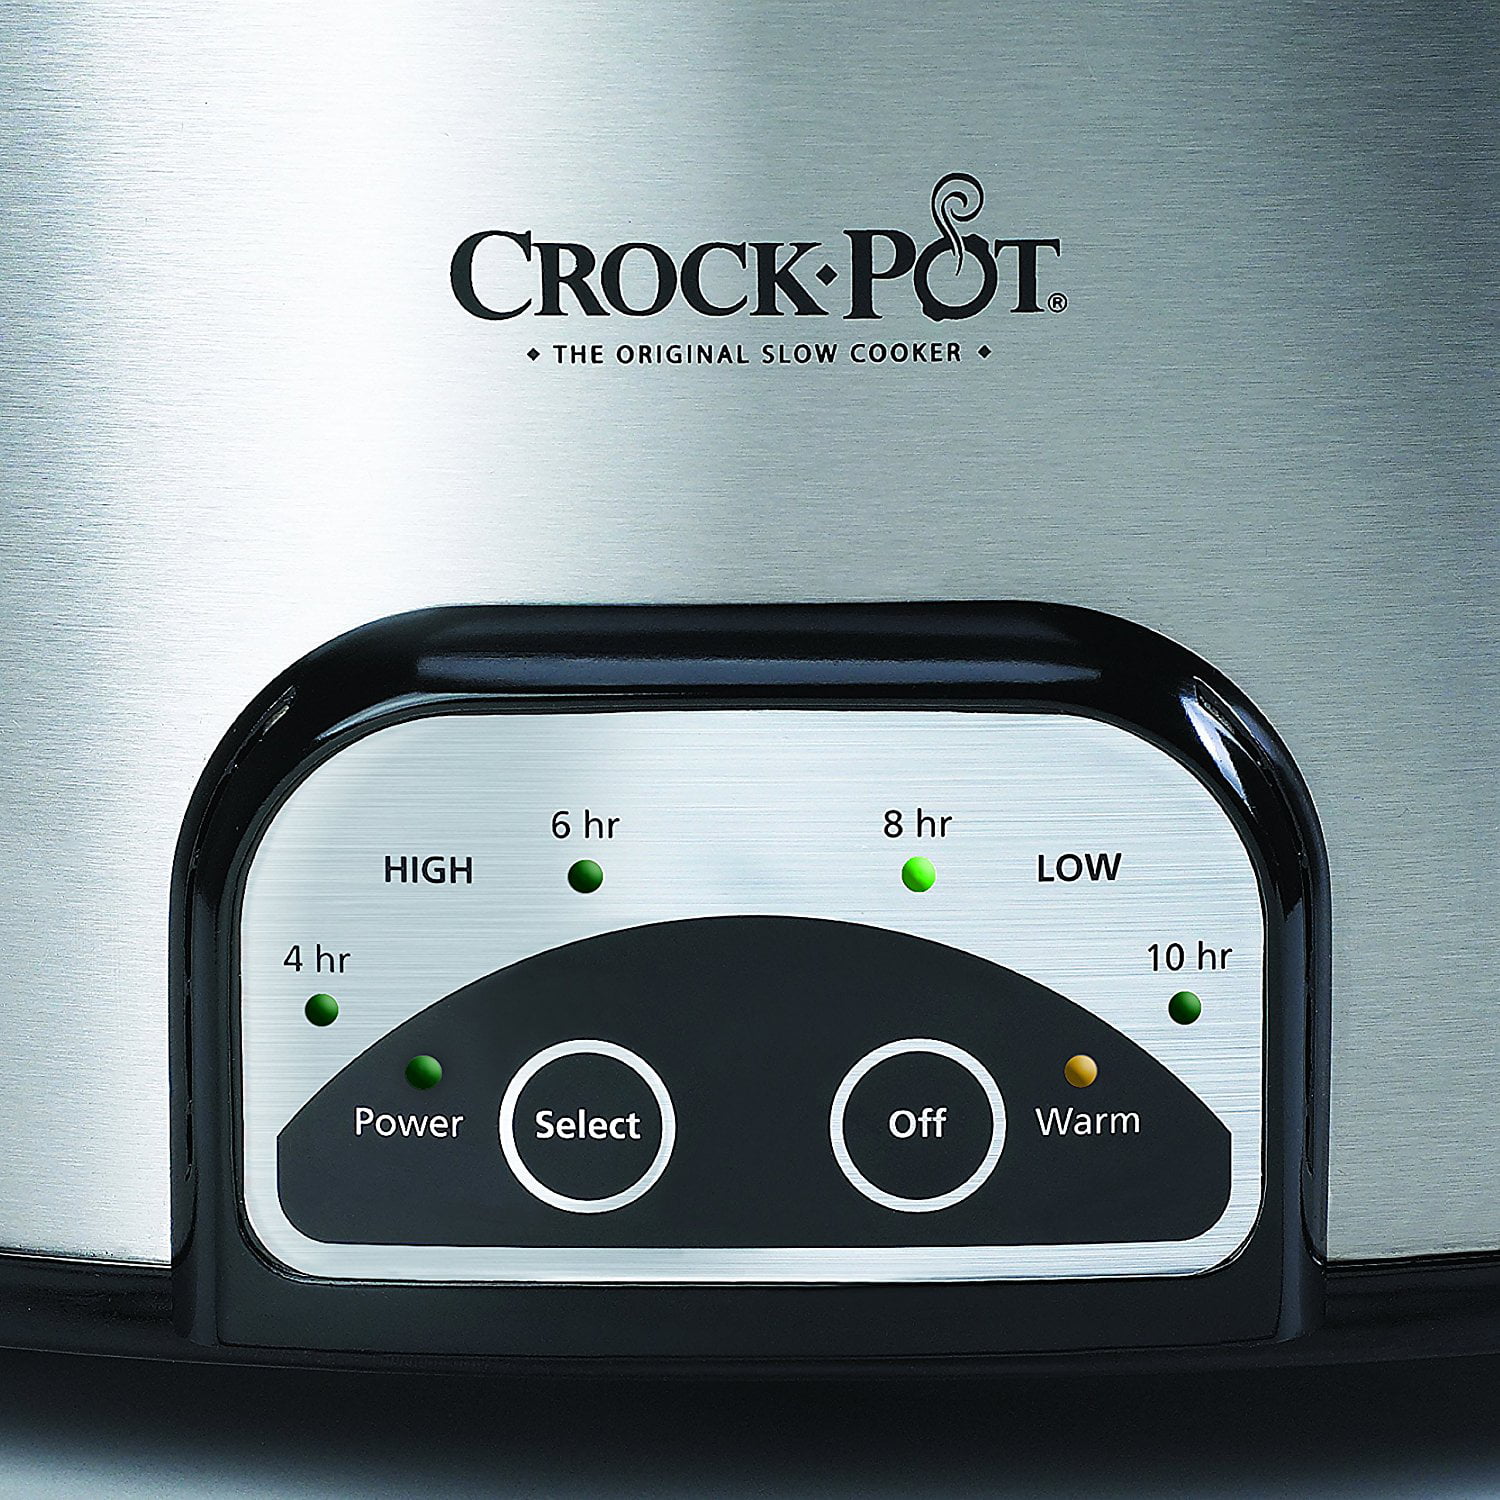 Crock-Pot 5-Quart Round Programmable Slow Cooker 38501 38501 W